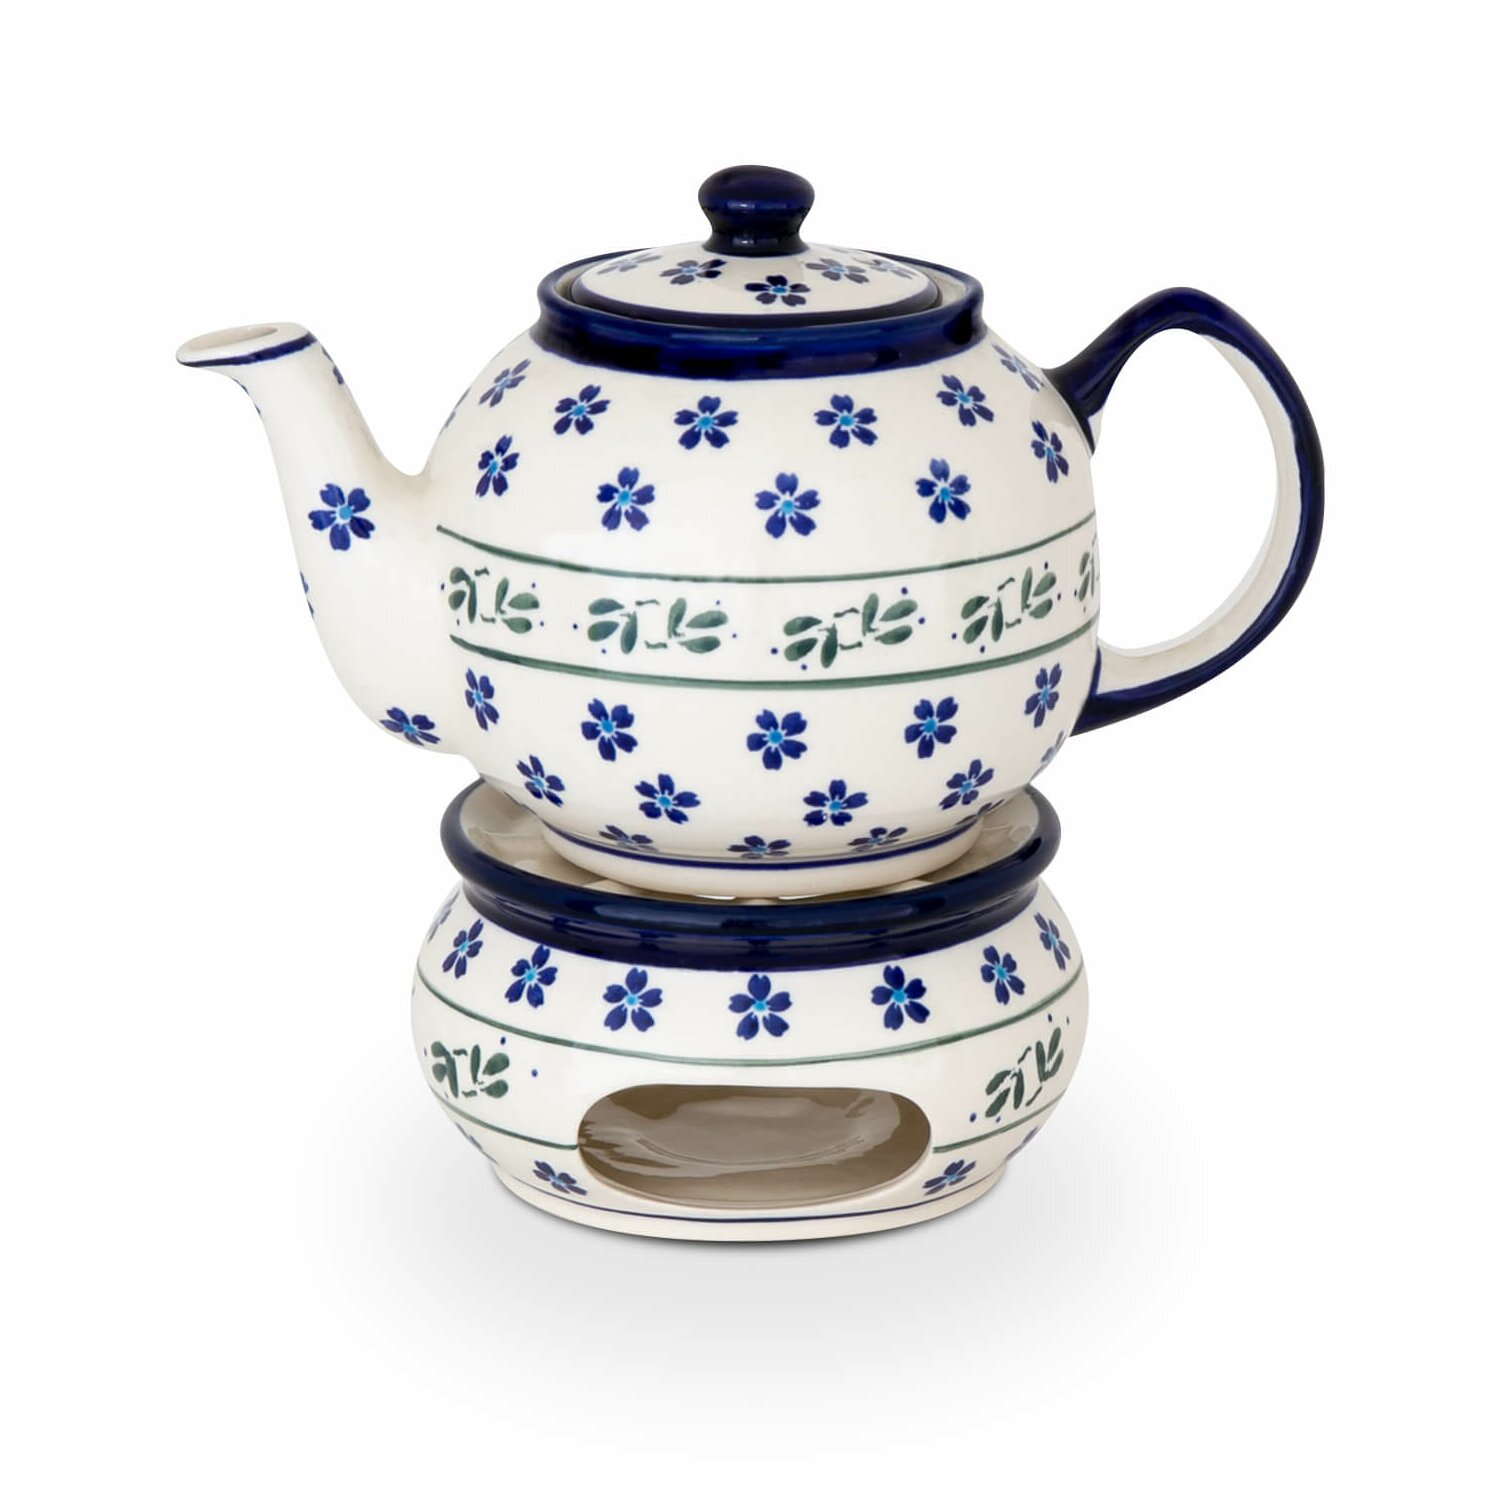 Original Bunzlauer Keramik Teekanne 1.0 Liter Stövchen im Dekor 37